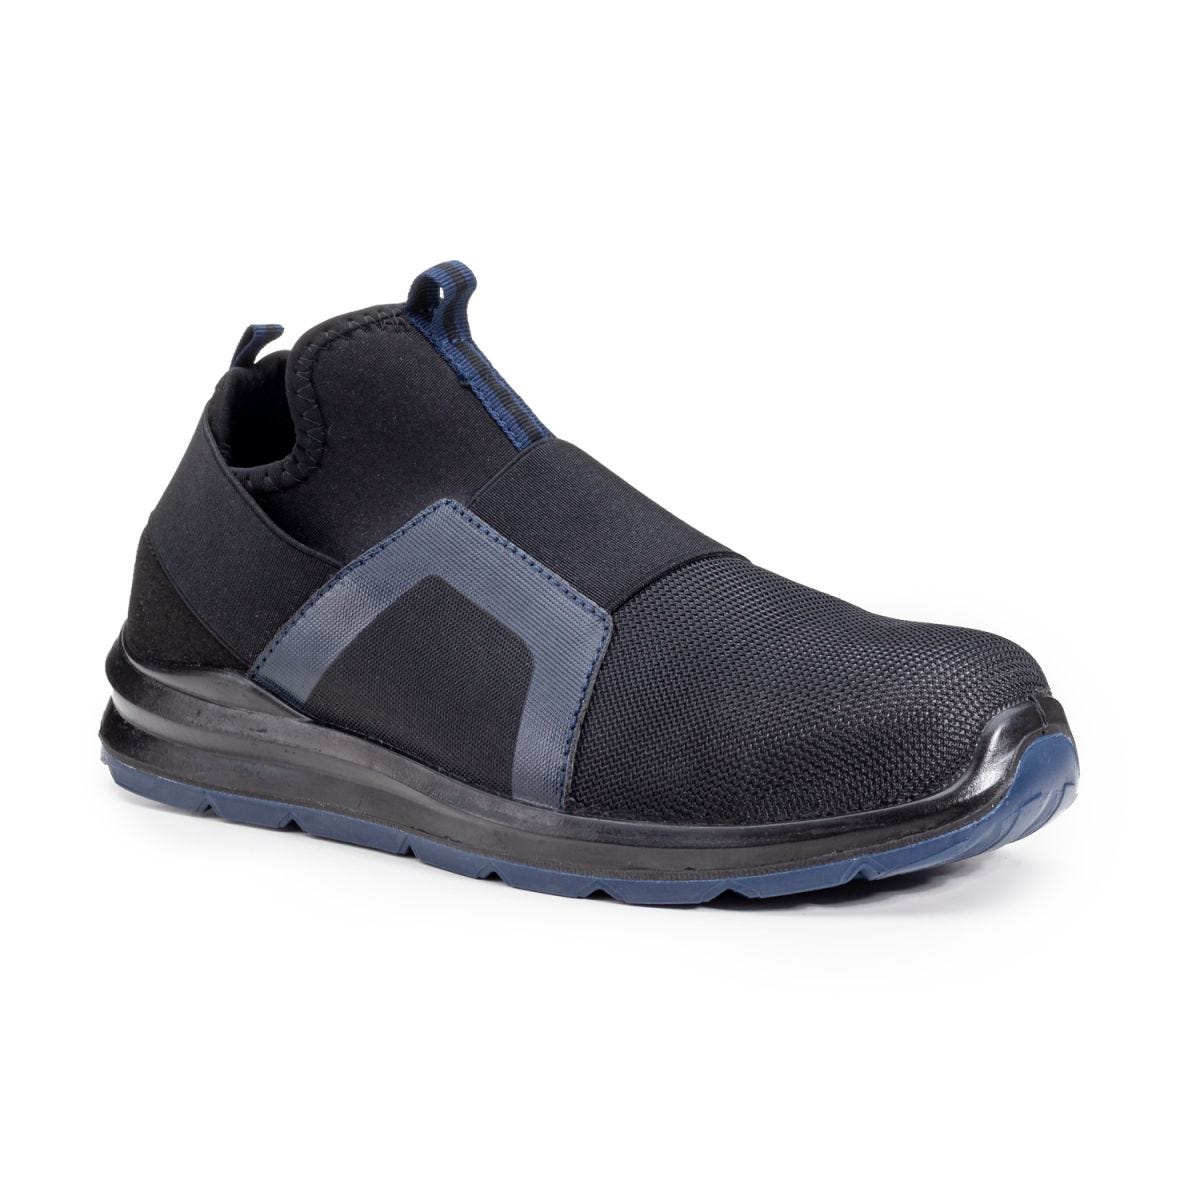 Chaussures de sécurité S1P PARAIBA Basse Noir Bleu - COVERGUARD - Taille 43 0